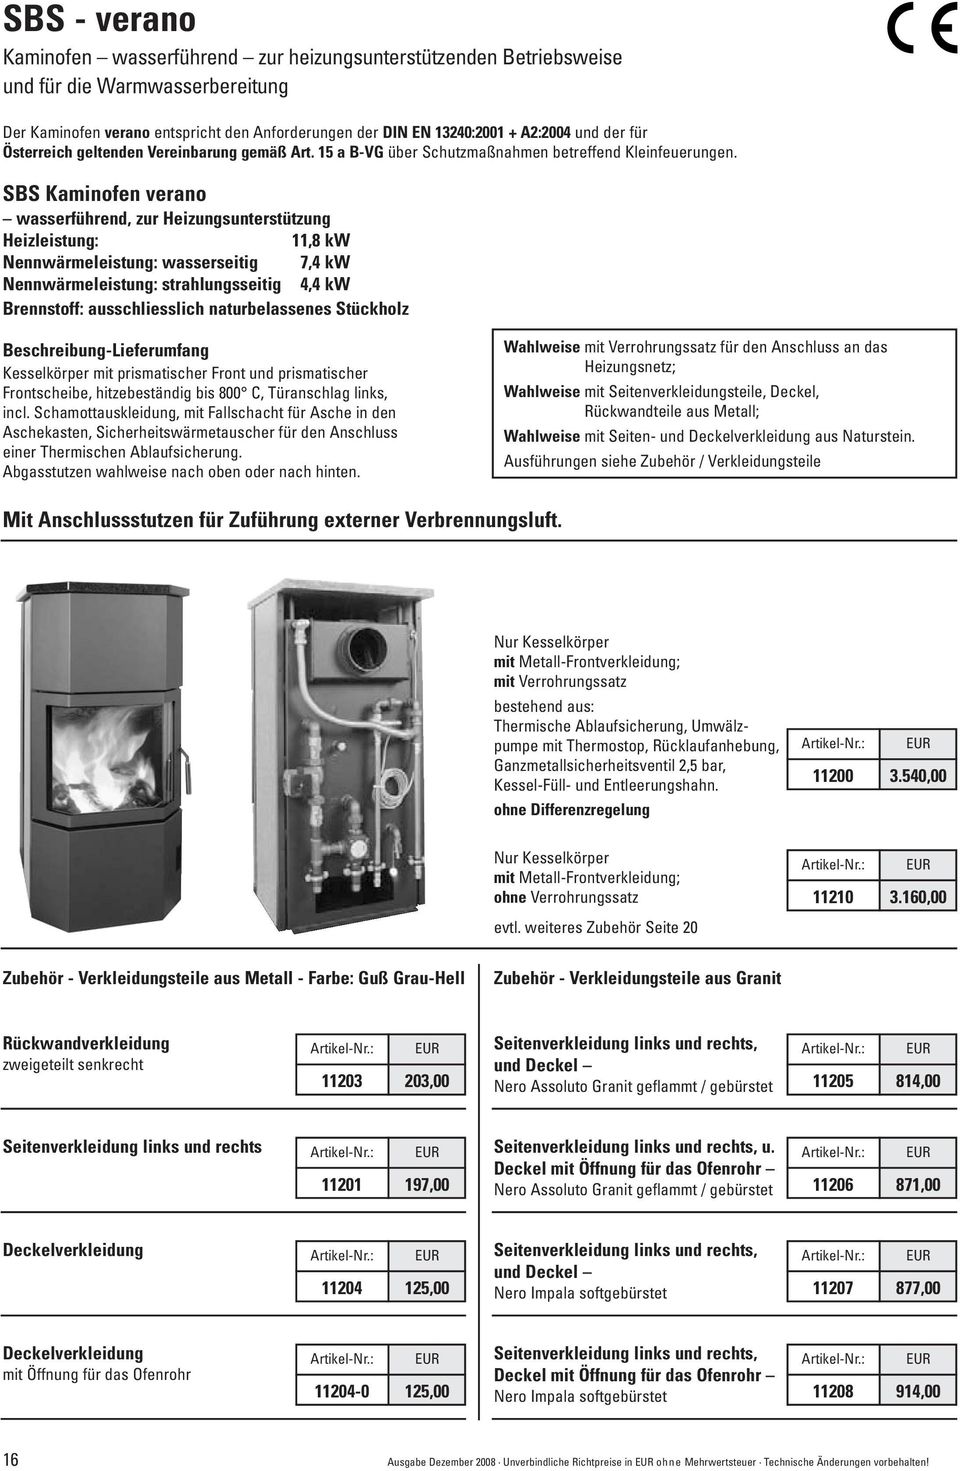 SBS Kaminofen verano wasserführend, zur Heizungsunterstützung Heizleistung: 11,8 kw Nennwärmeleistung: wasserseitig 7,4 kw Nennwärmeleistung: strahlungsseitig 4,4 kw Brennstoff: ausschliesslich